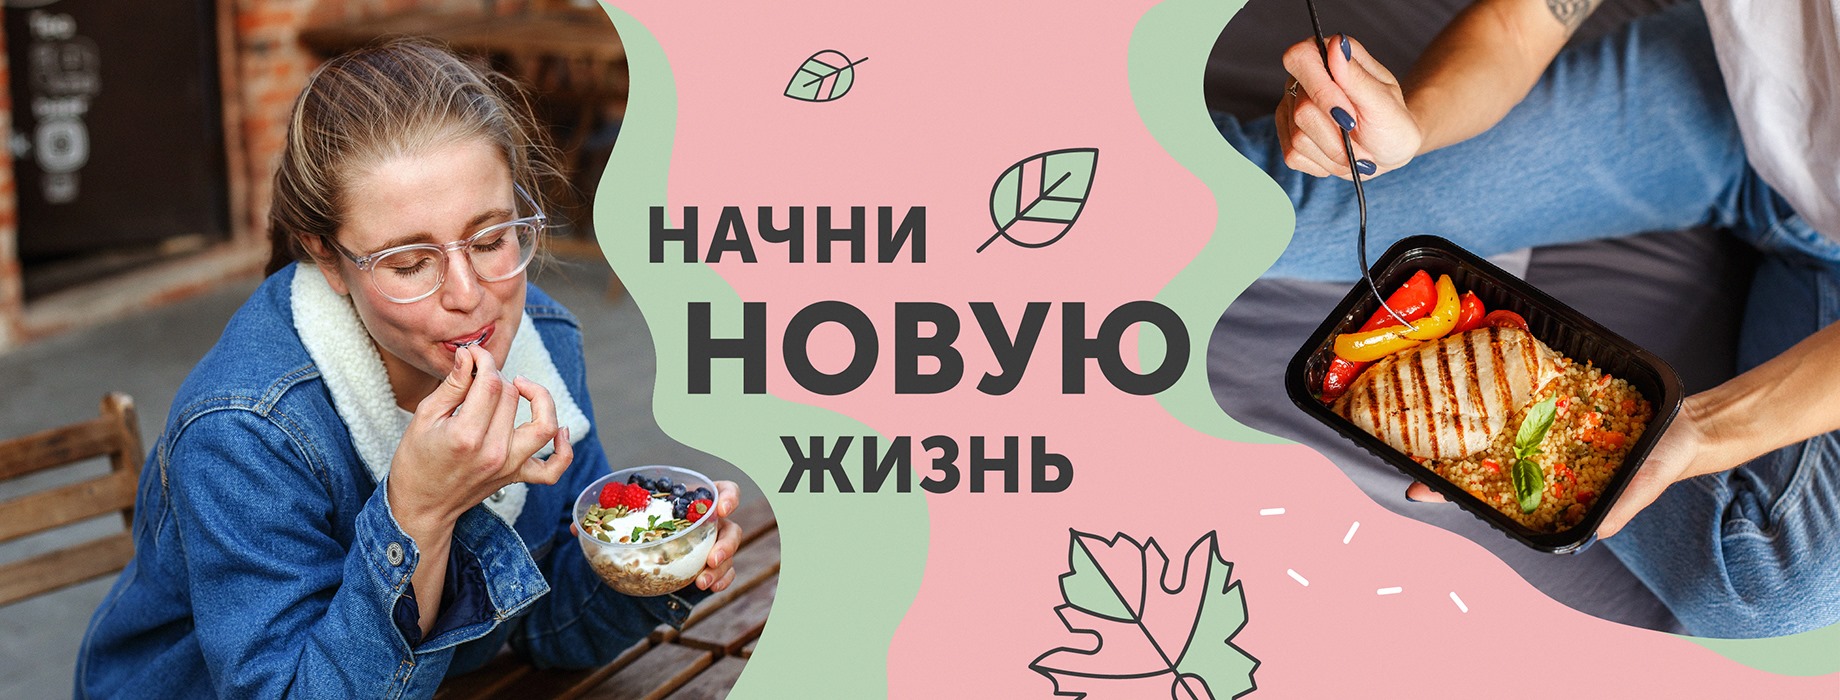 Закрытая акция выходного дня в Grow Food! Всего 50 коробок со скидкой до 5000 рублей!